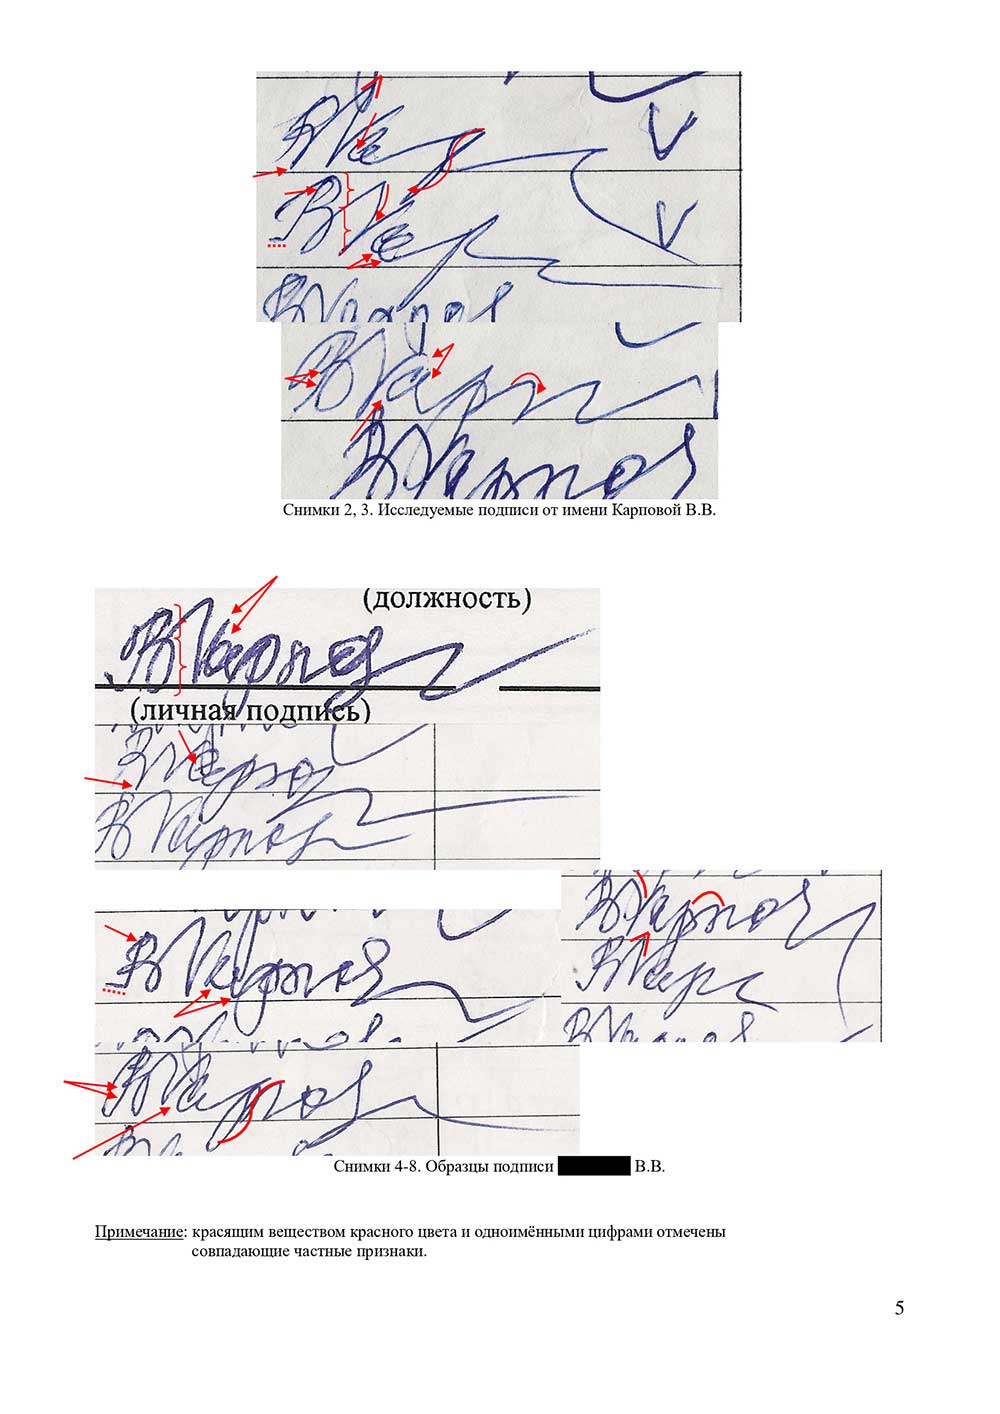 Судебная и досудебная почерковедческая экспертиза документов. Графологическая экспертиза почерка, подписи в Калининграде